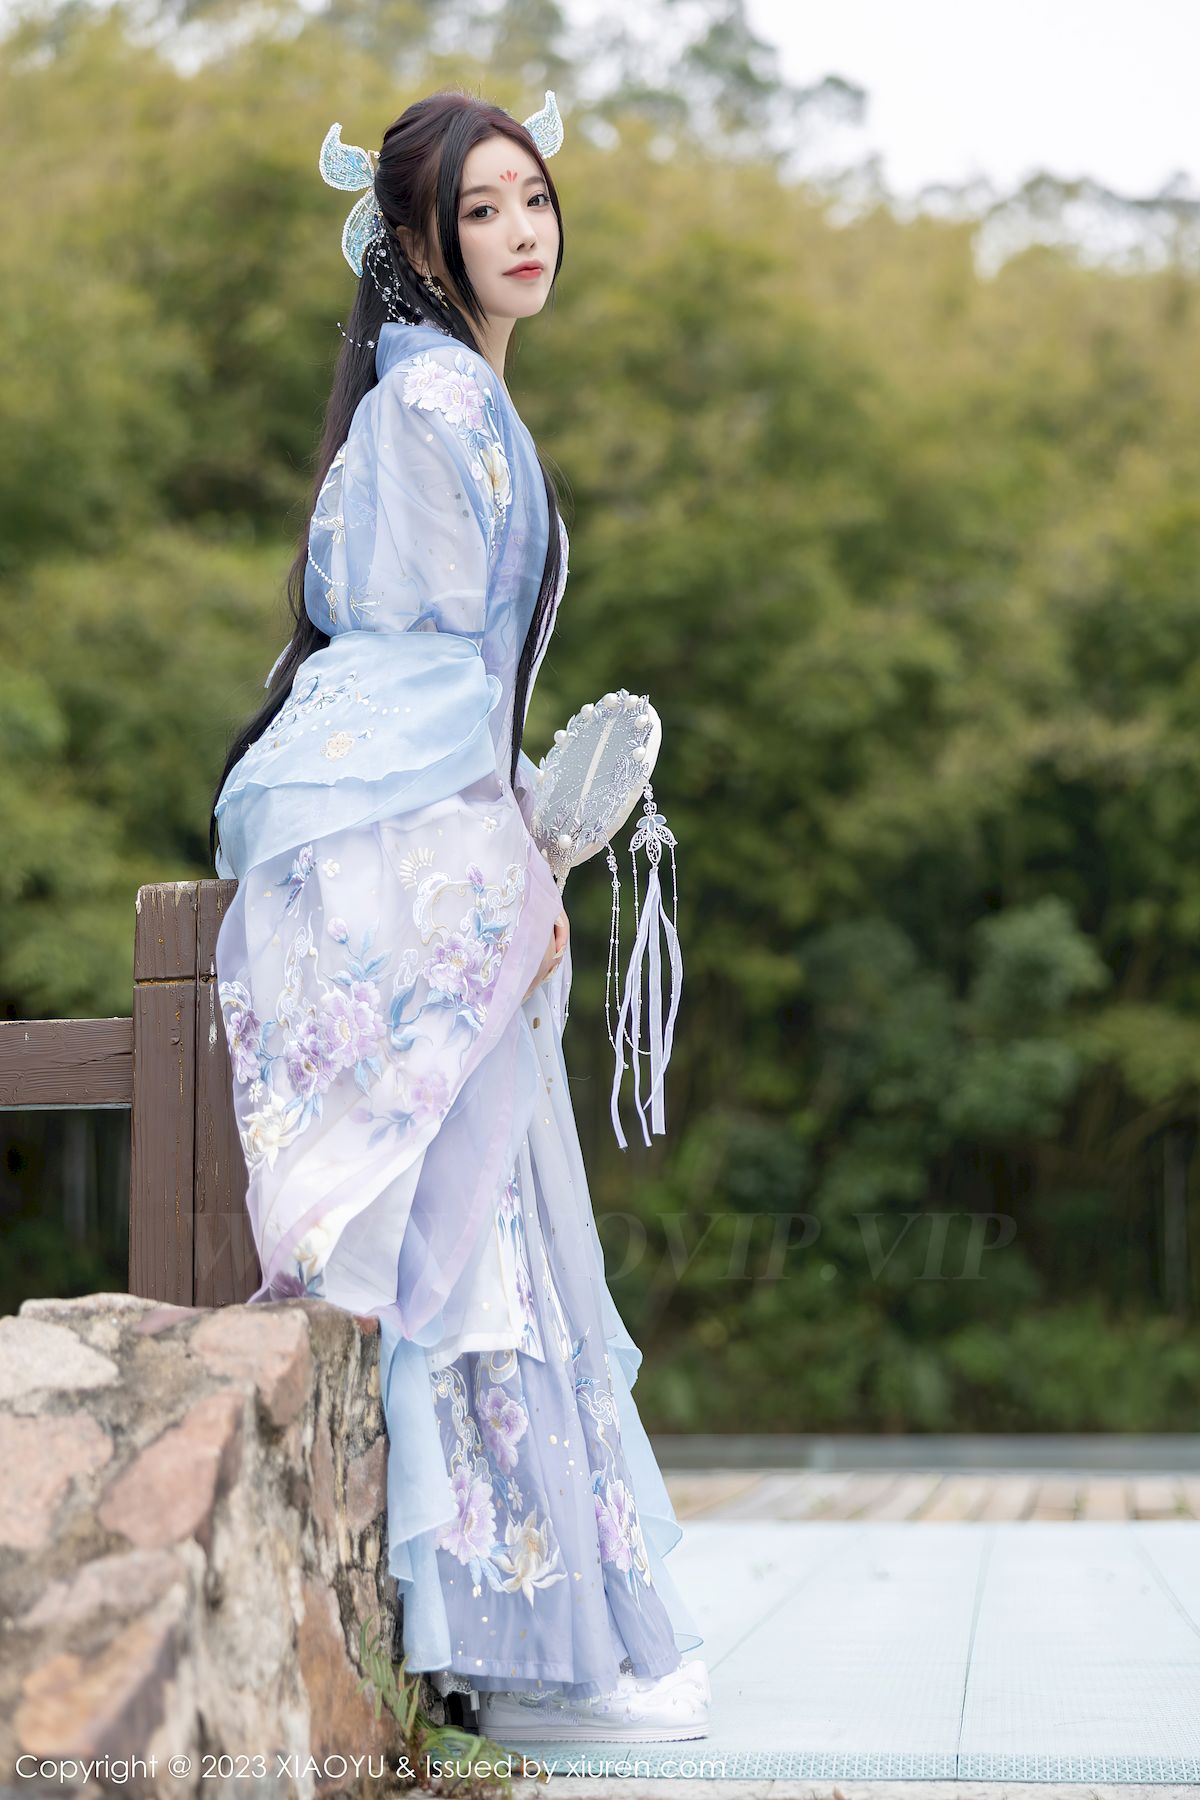 语画界性感女神杨晨晨Yome淡蓝紫色古装服饰白色丝袜写真【60】 - 美女 - 亿图全景图库